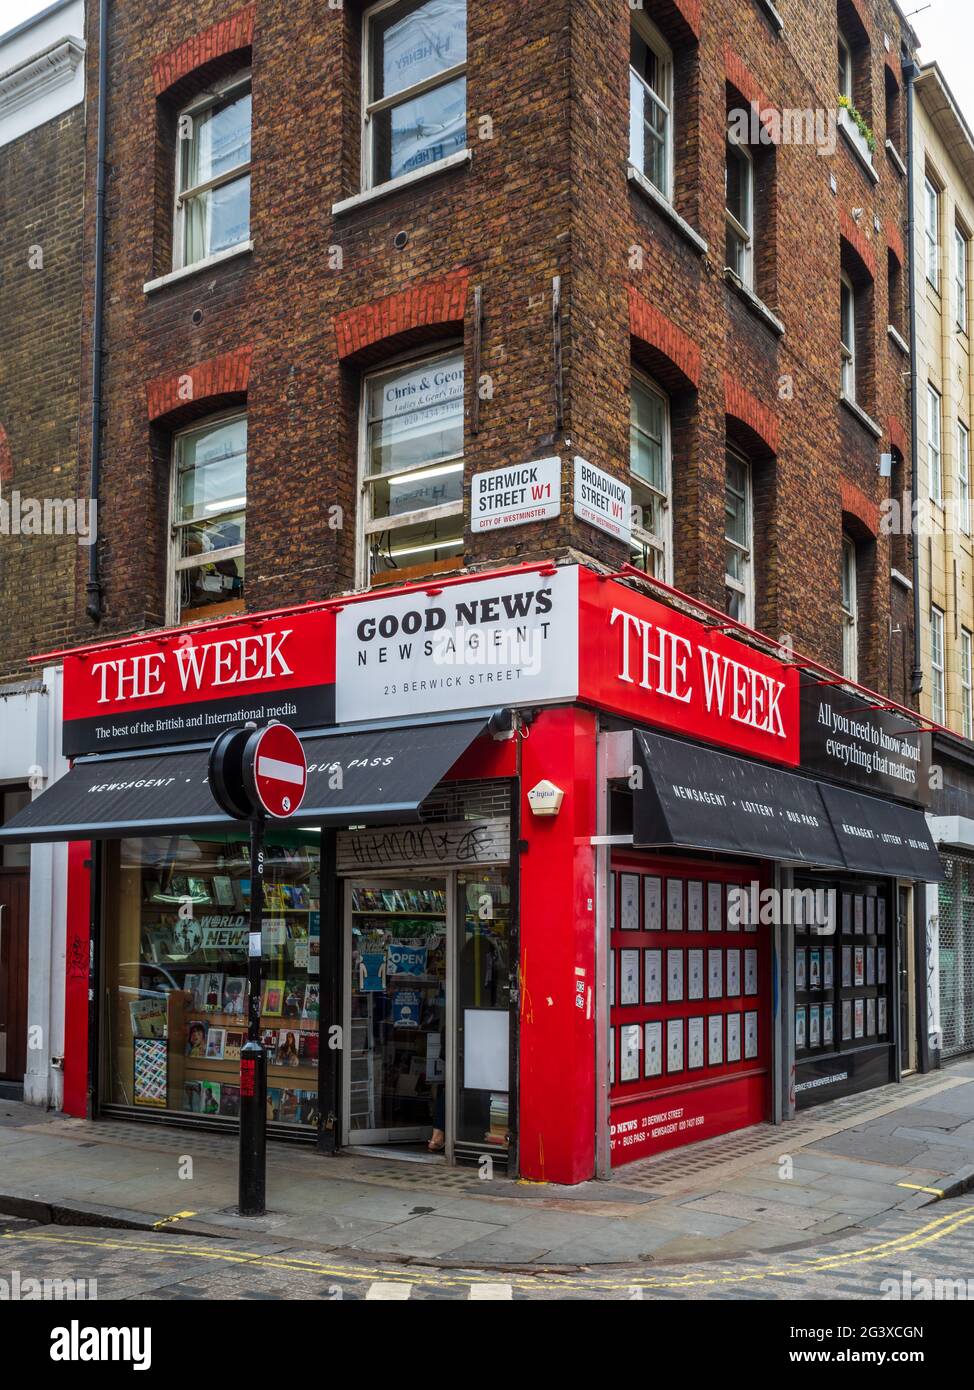 London Newsagent Soho London - Good News Newsagent sur Berwick Street dans Soho de Londres avec bannière publicitaire pour le magazine The week Banque D'Images